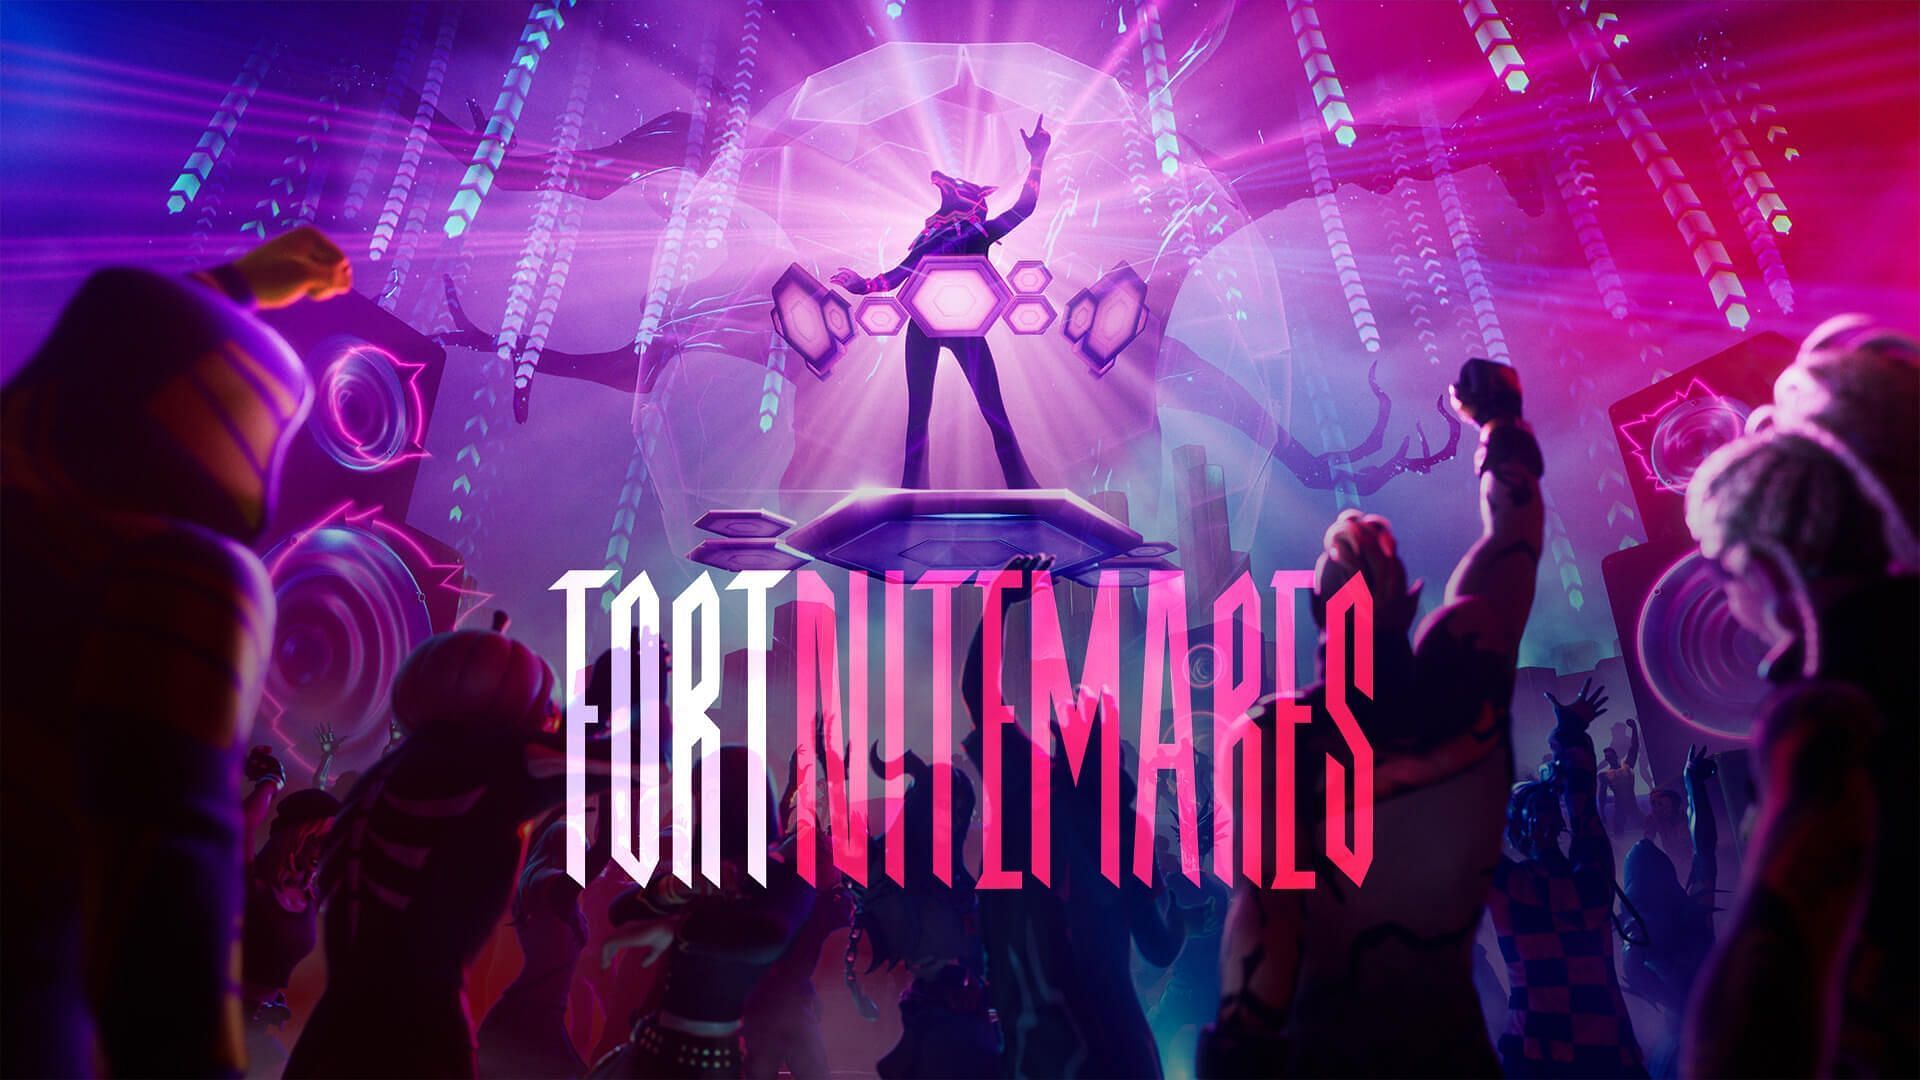 Fortnite DJ Lyka in FortniteMares 2022